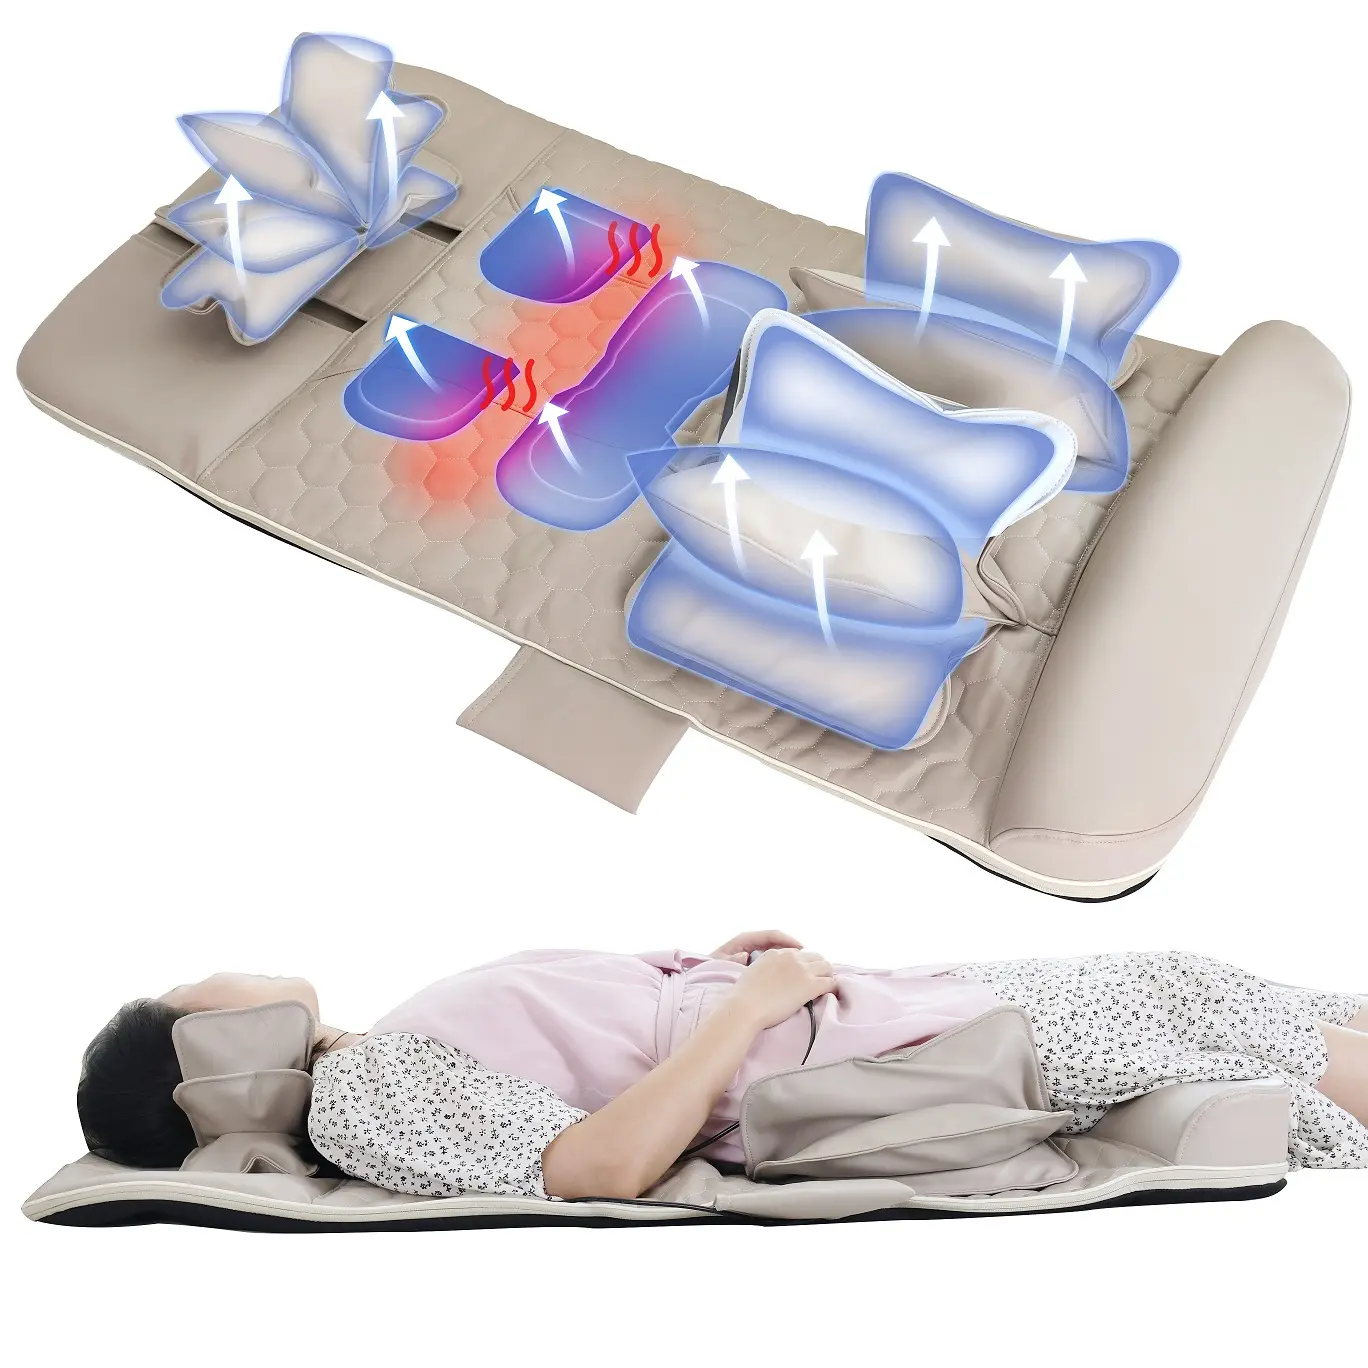 Healthpal Best Sell nuovi prodotti Body Electric Air Compression Stretching Massage Mat sport massaggio materasso massaggio corea